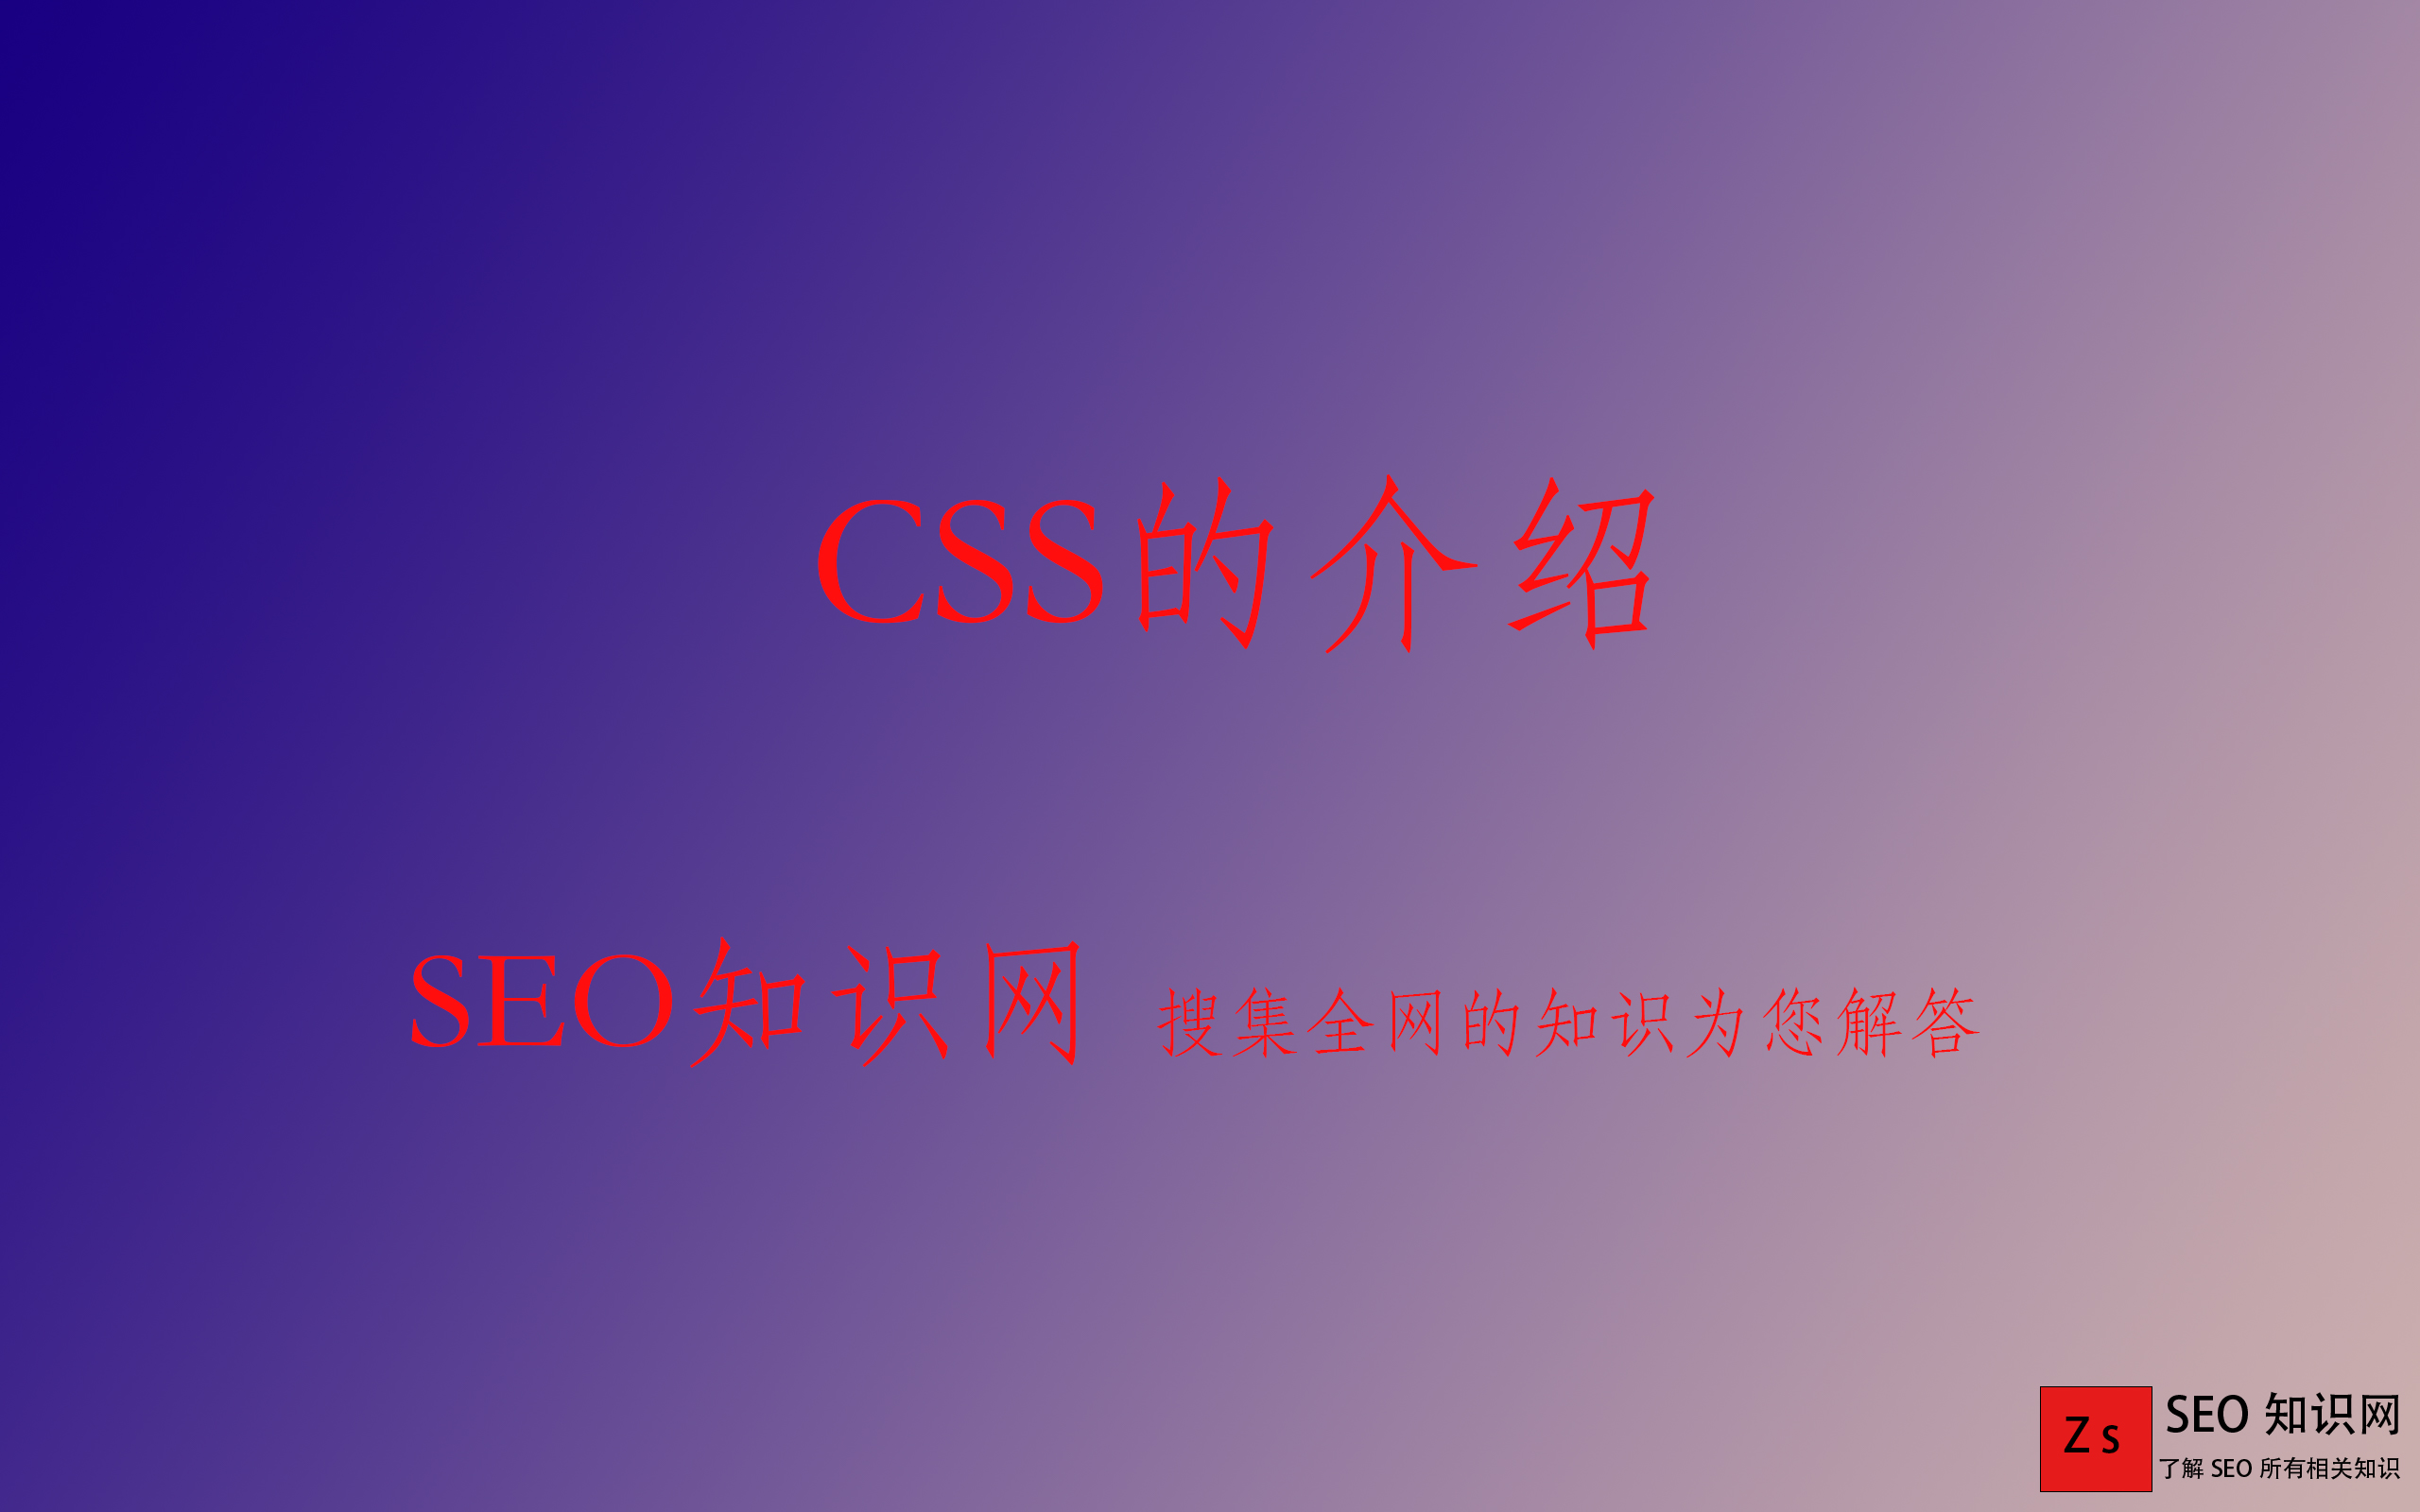 CSS的介绍